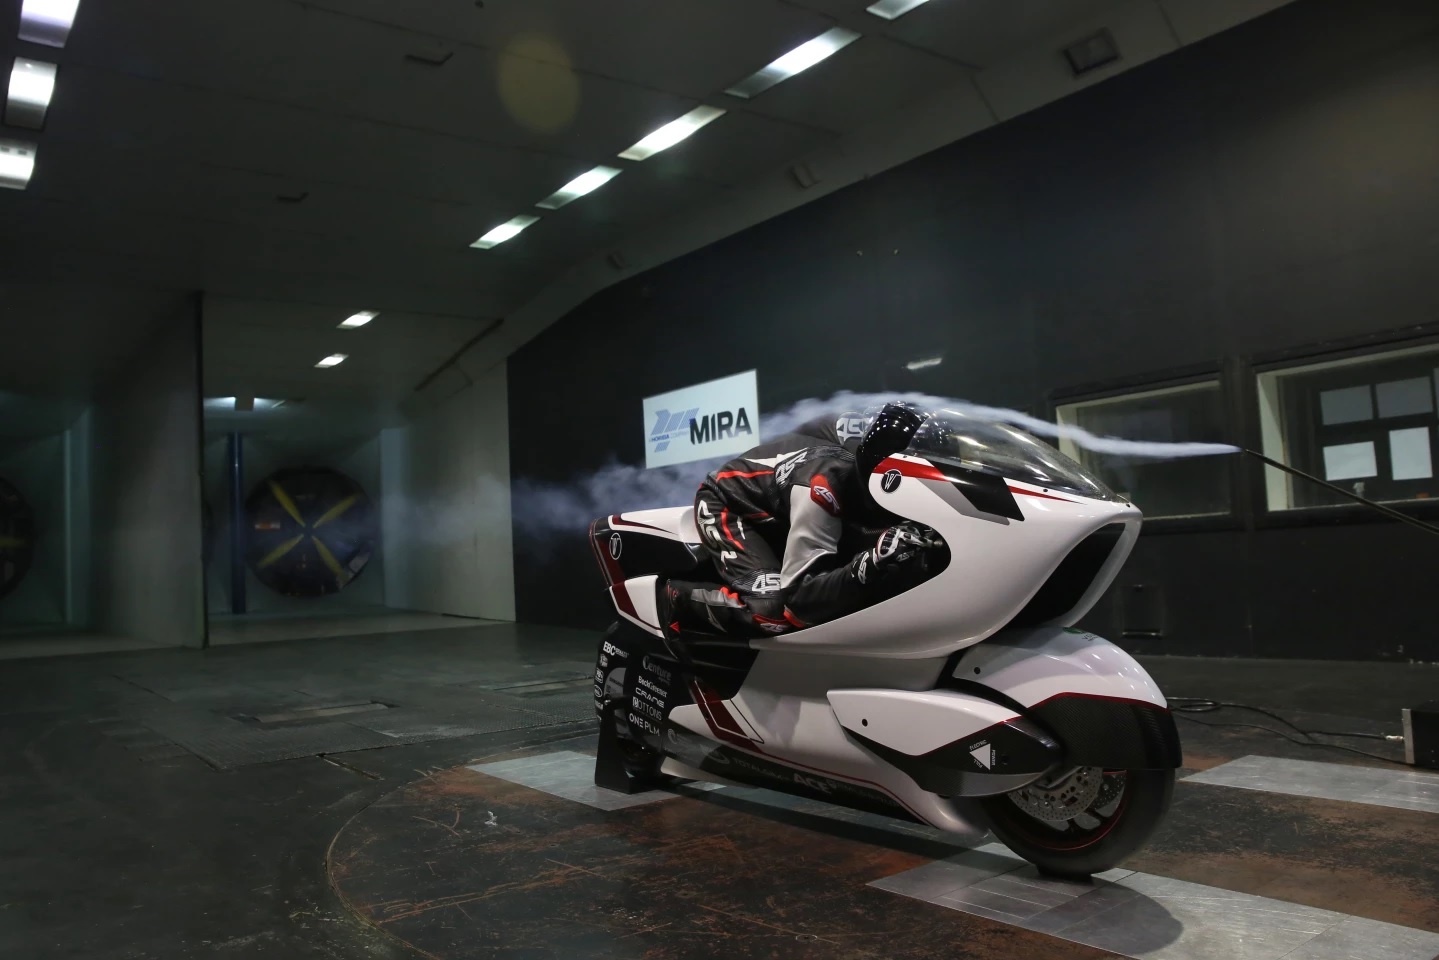 موتورسیکلت الکتریکی که ثبت رکورد سرعت 402 کیلومتر در ساعت را هدف قرار داده است (+فیلم و عکس)